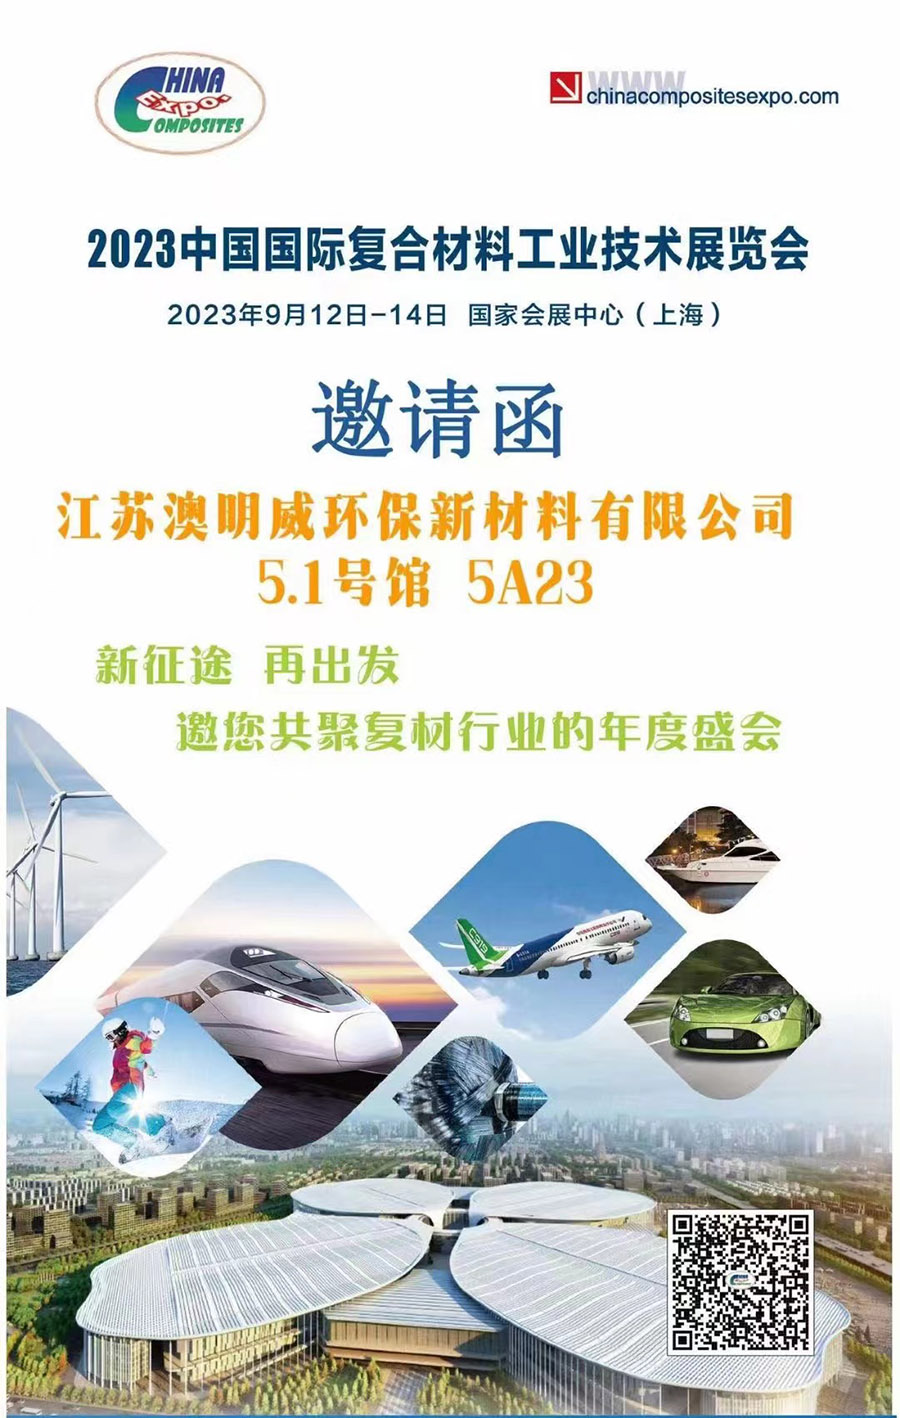 2023年中国国际复合材料工业技术展会